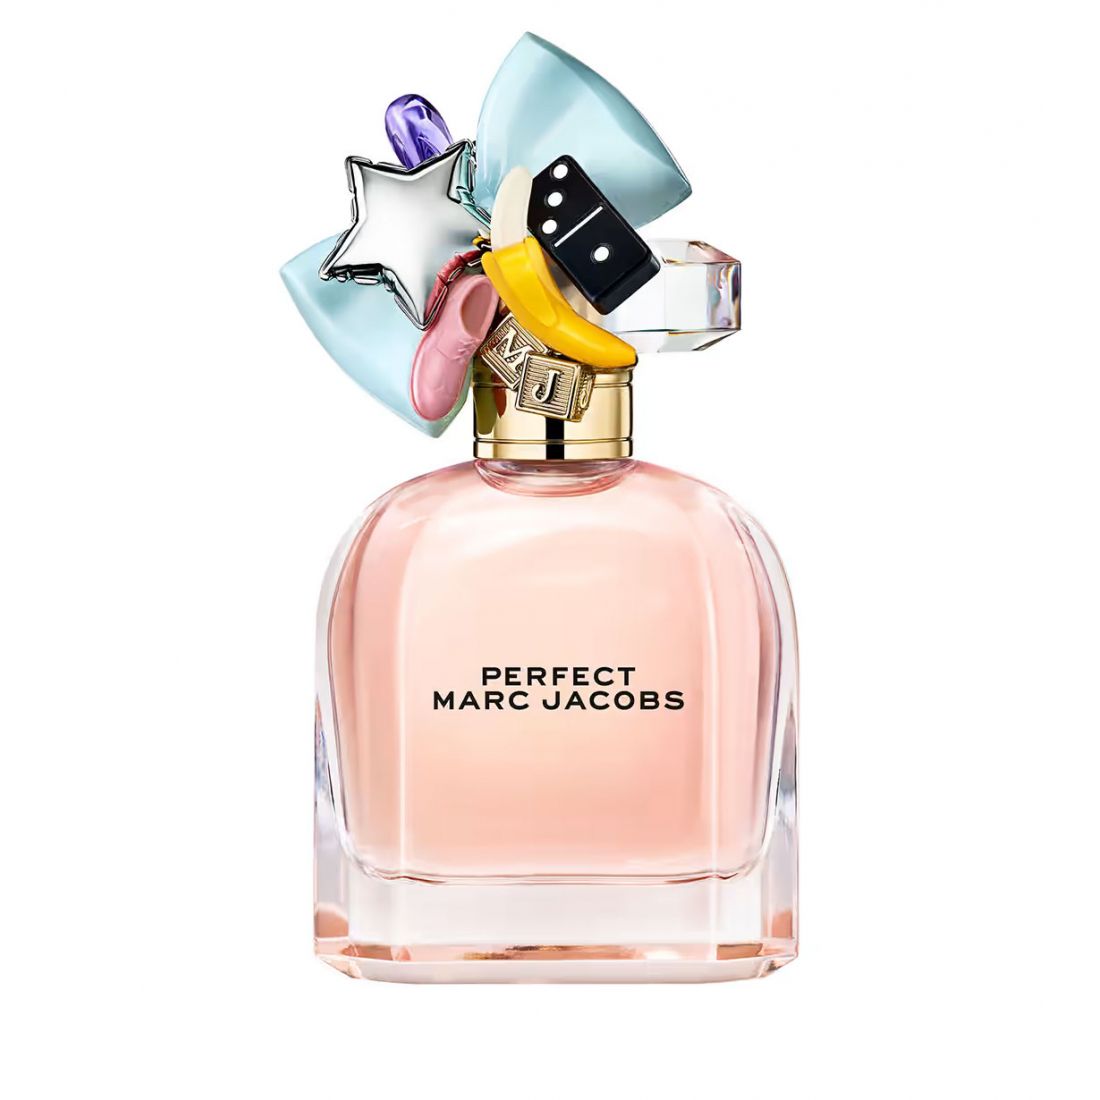 Marc Jacobs - Eau de parfum 'Perfect' - 50 ml